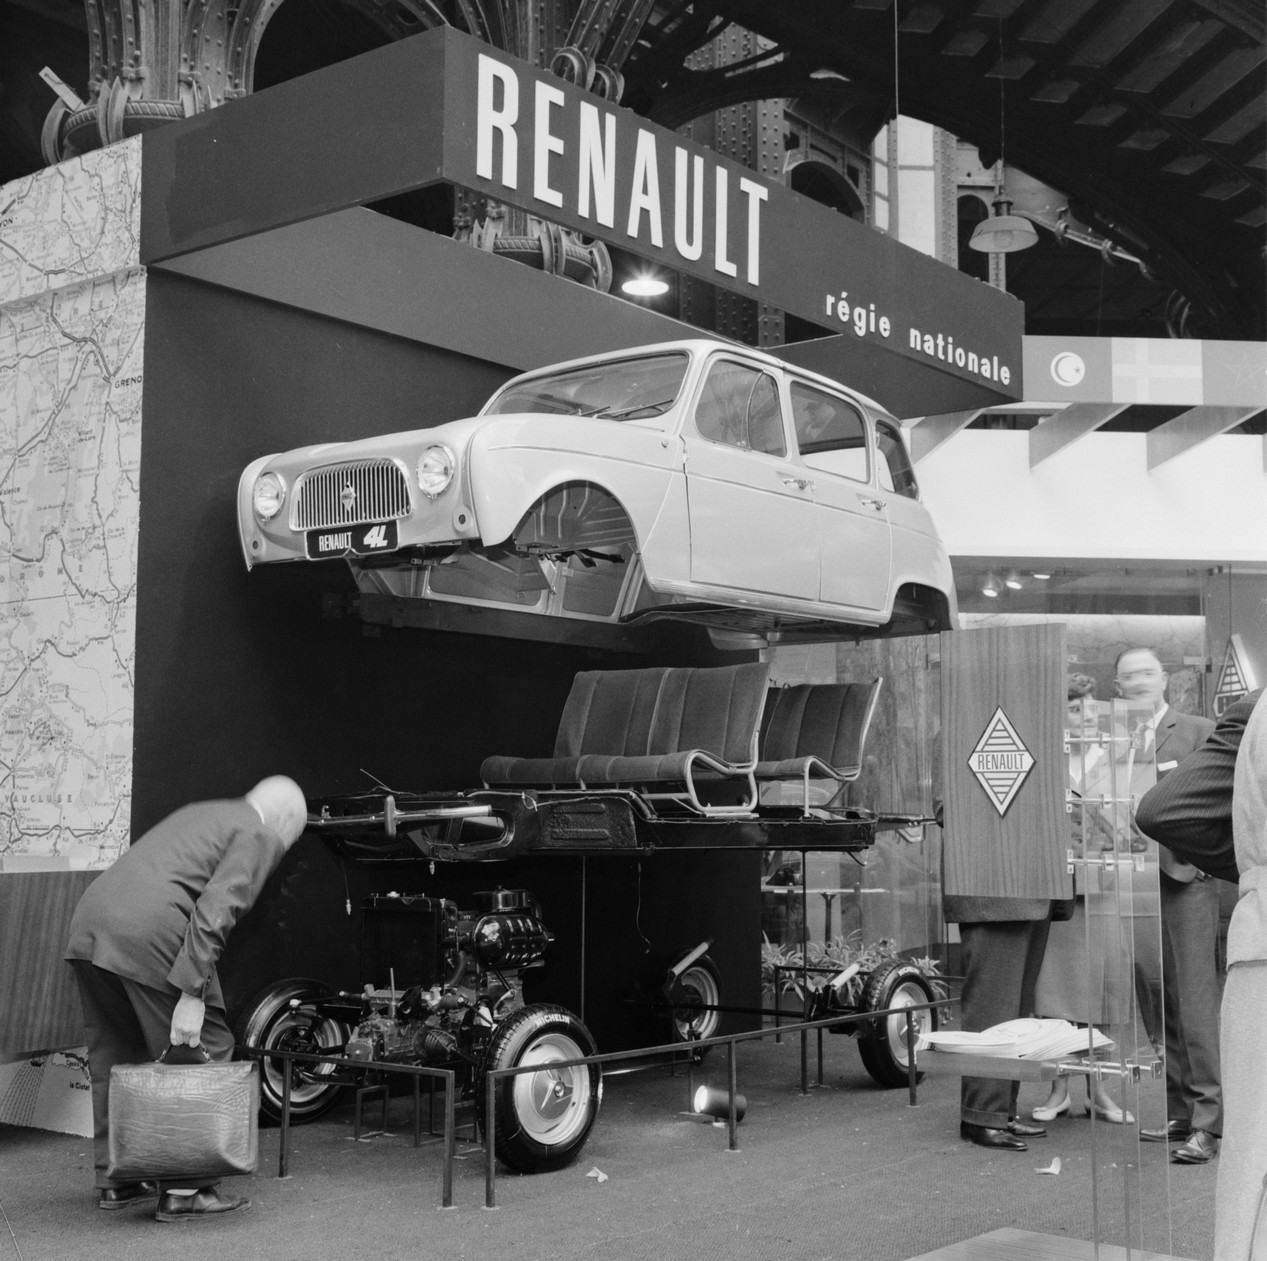 1961 Renault 4 Salon de lAutomobile de Paris - Vintage